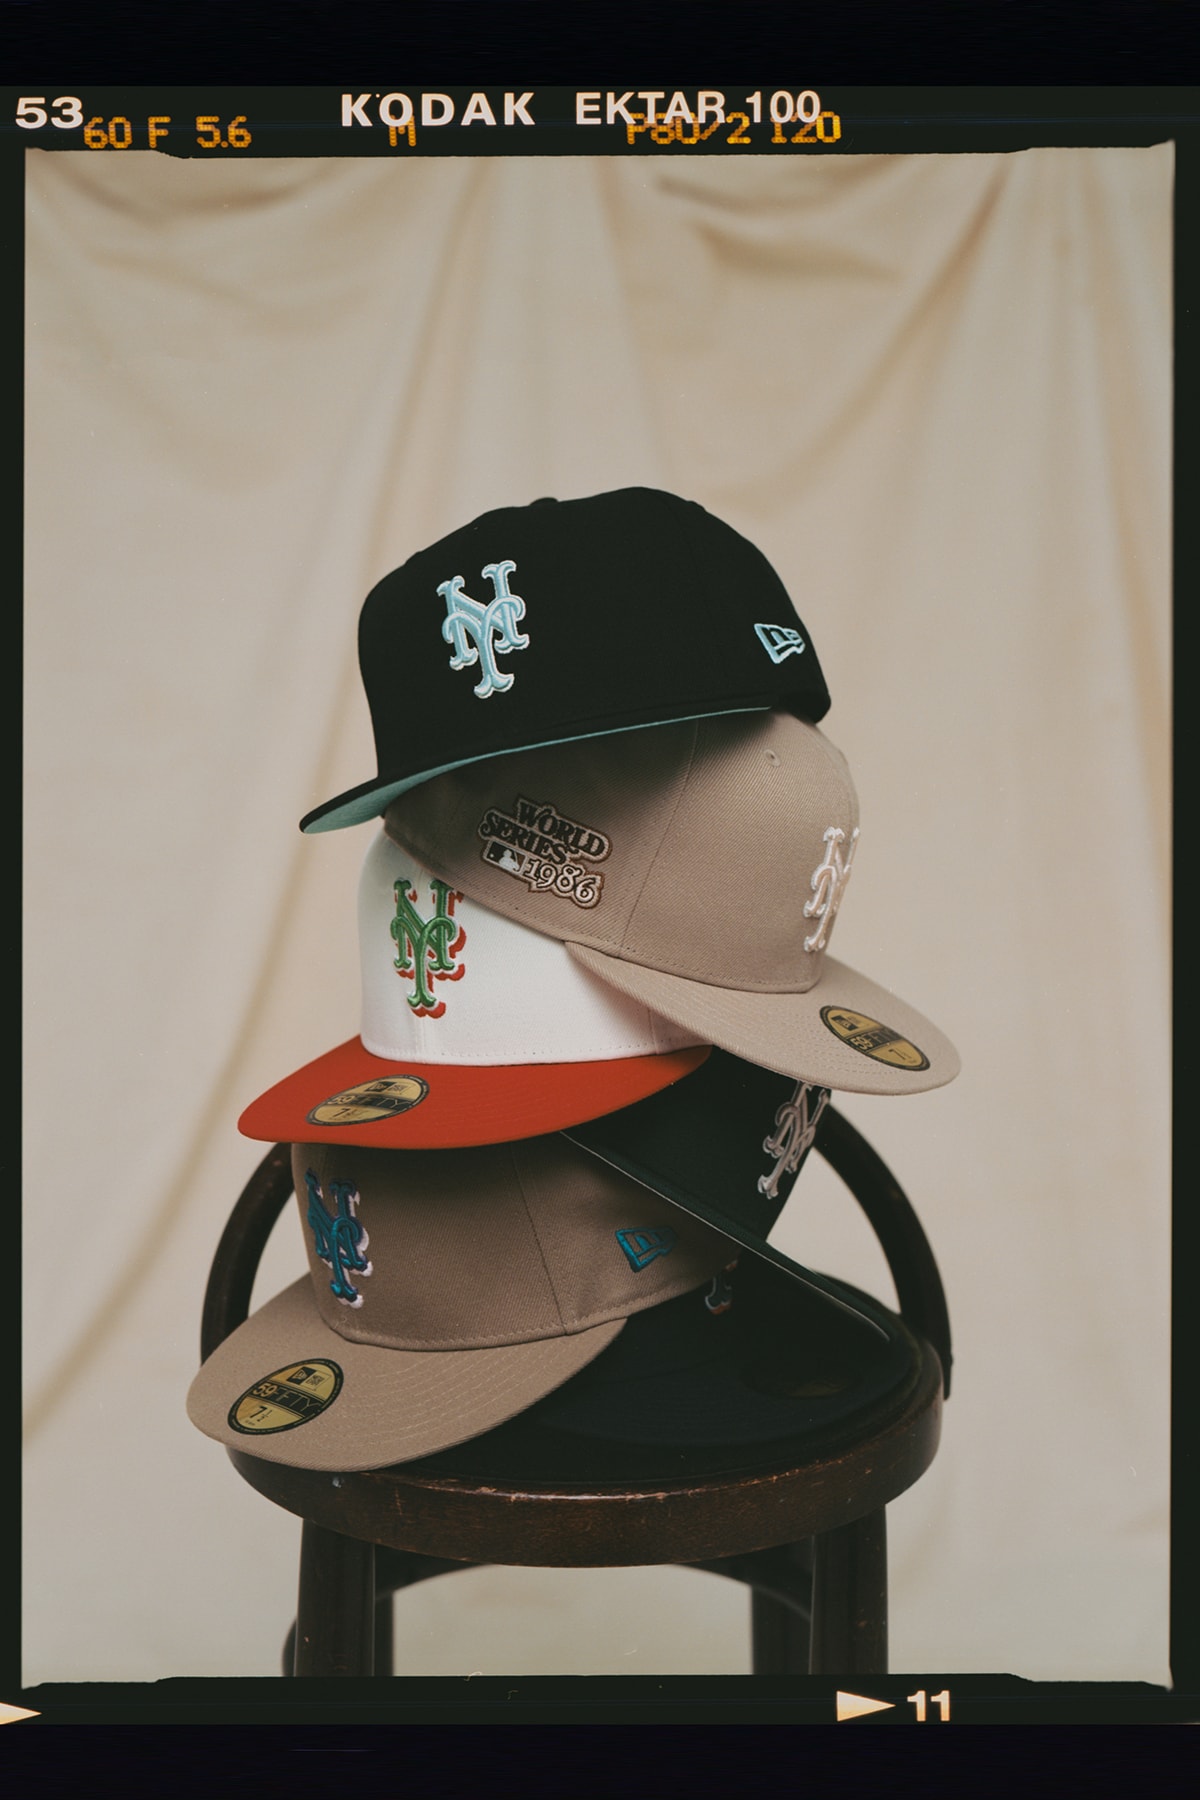 ザ・キャップ x ニューエラから MLB ニューヨーク・メッツをフィーチャーした “メトロポリタンズ パック” が登場 THE CAP x New Era®︎ 59FIFTY MLB New York Mets “Metropolitans Pack” release info